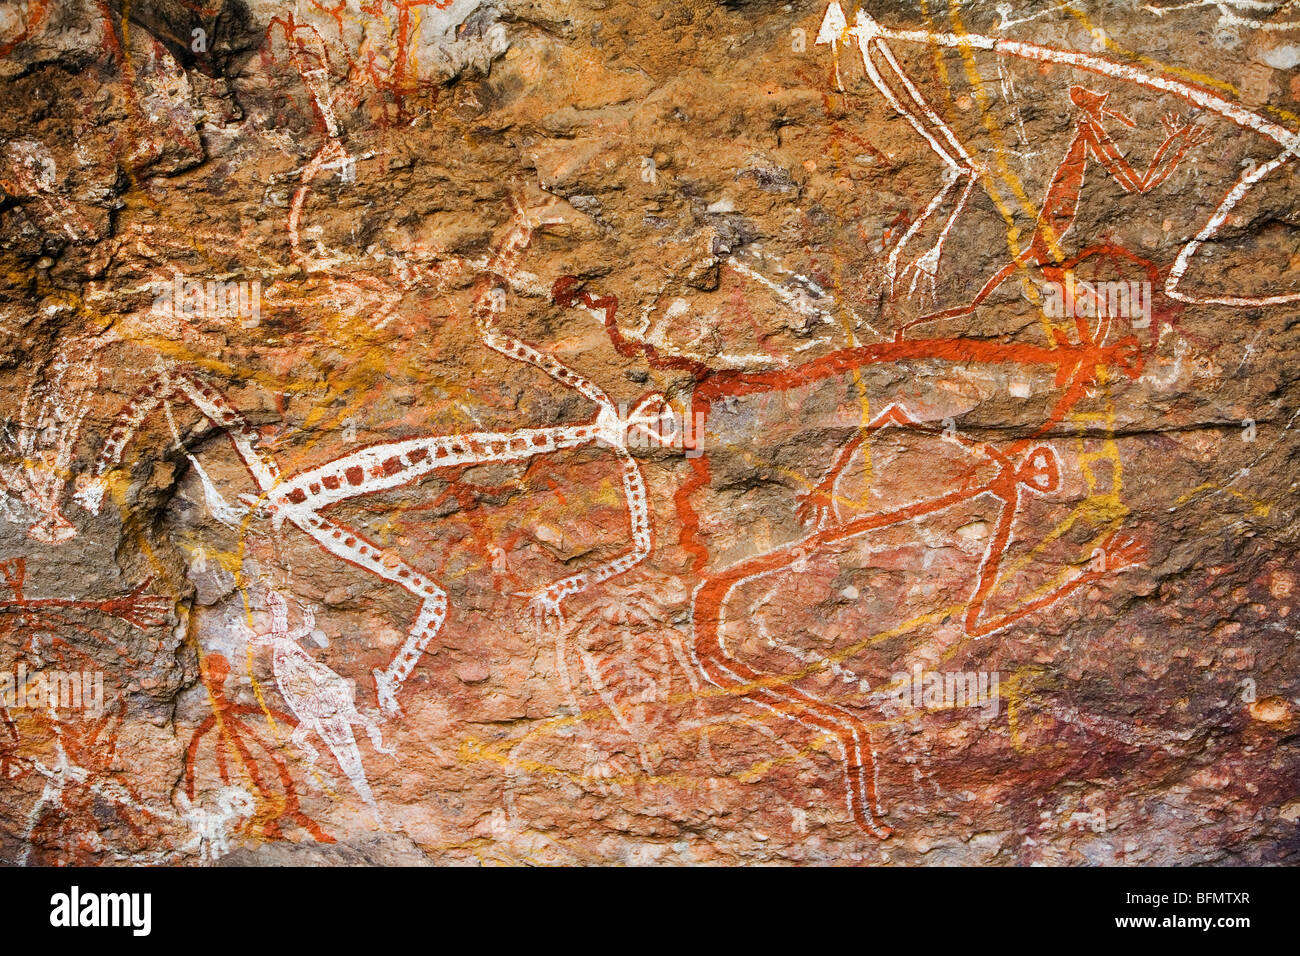 L'Australie, Territoire du Nord, le Parc National de Kakadu.Les grotte de peinture à l'Aboriginal Rock Art site de Nourlangie.(PR) Banque D'Images